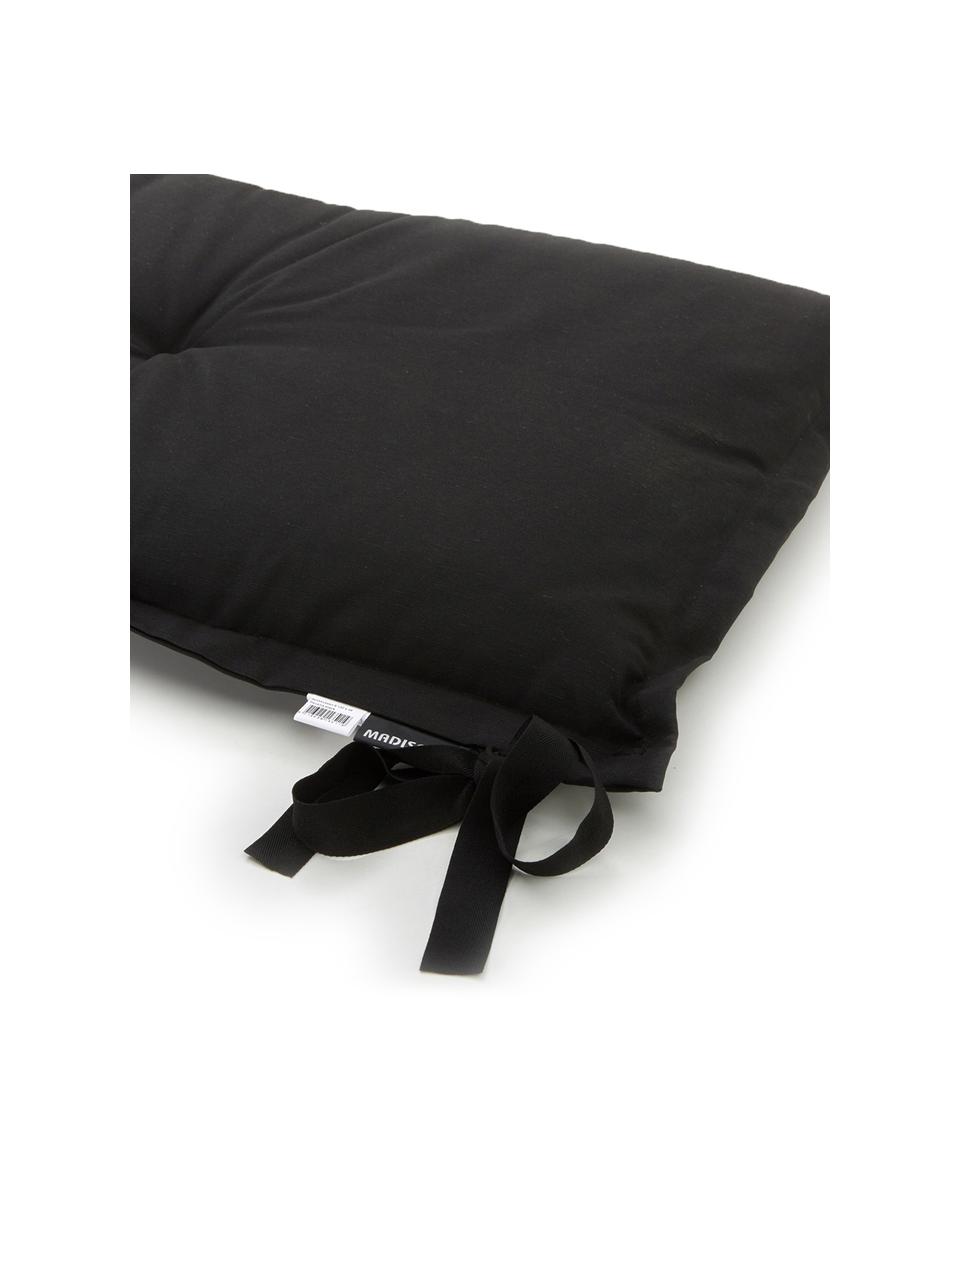 Poduszka na ławkę Panama, 50% bawełna, 45% poliester,
5% inne włókna, Czarny, S 48 x D 120 cm